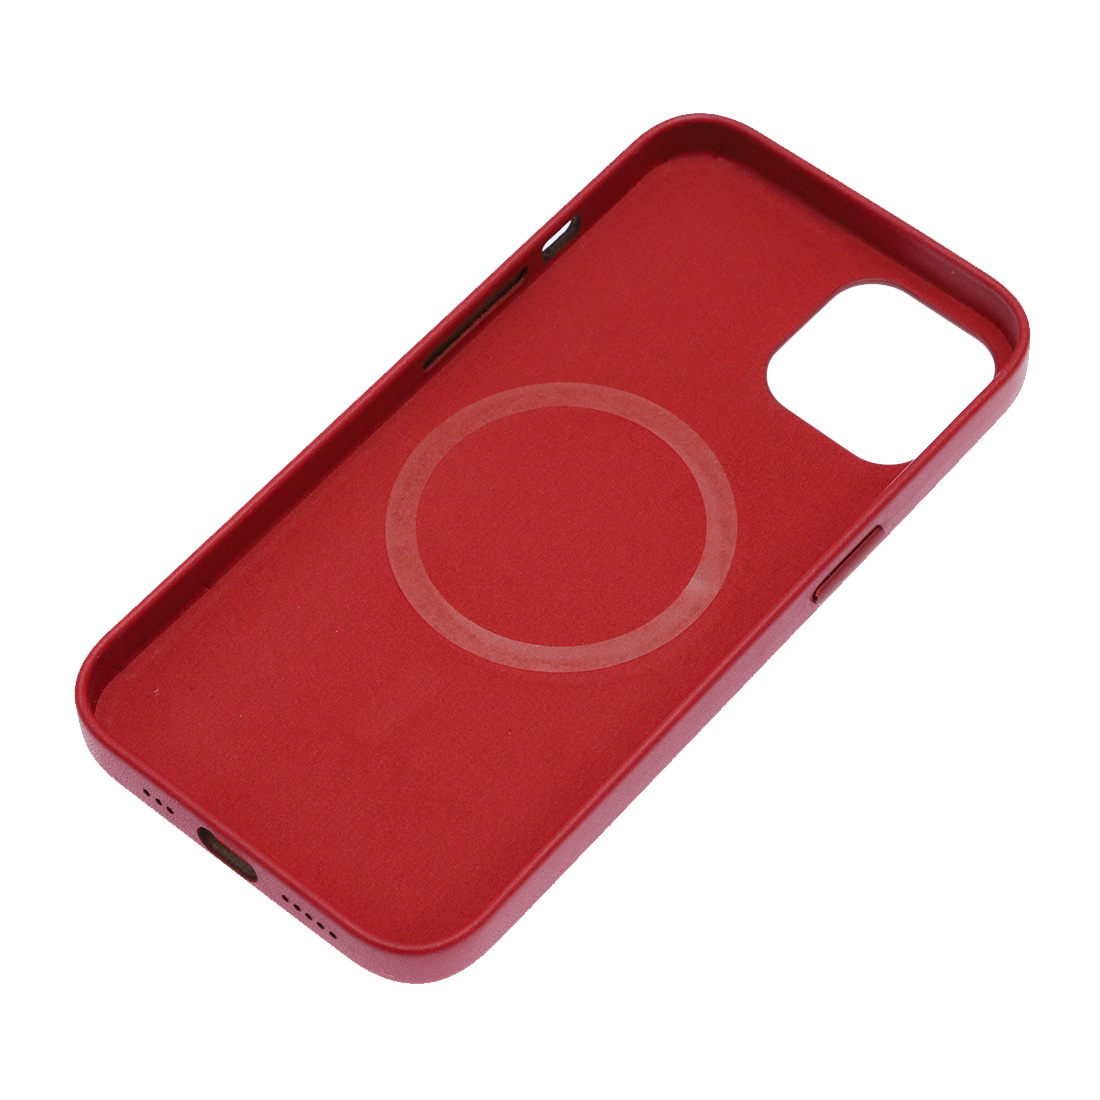 Чехол накладка Leather Case с поддержкой MagSafe для APPLE iPhone 13, силикон, бархат, экокожа, цвет малиновый